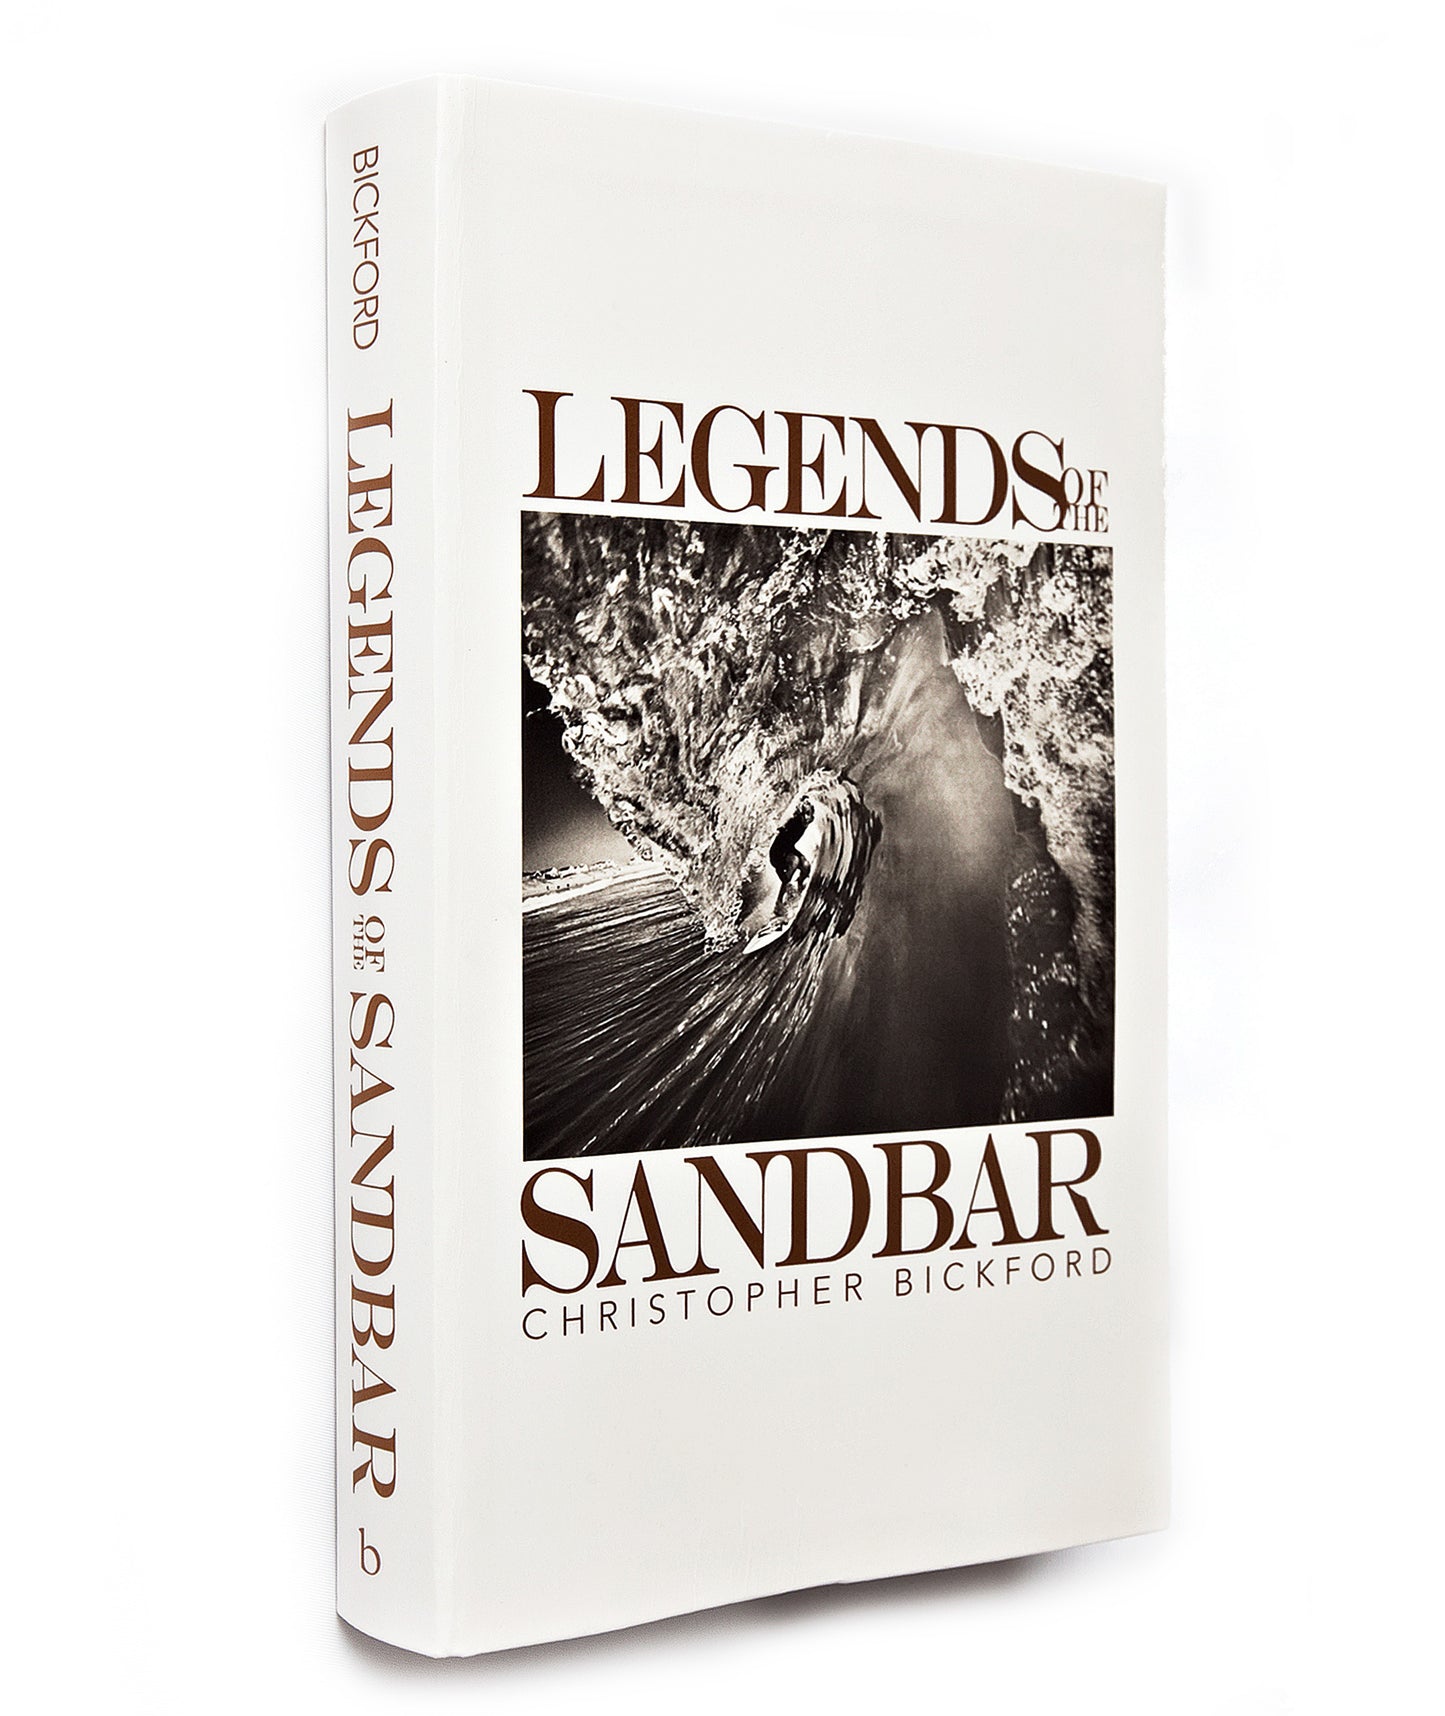 Legends of the Sandbar - Christopher Bickford - Signed